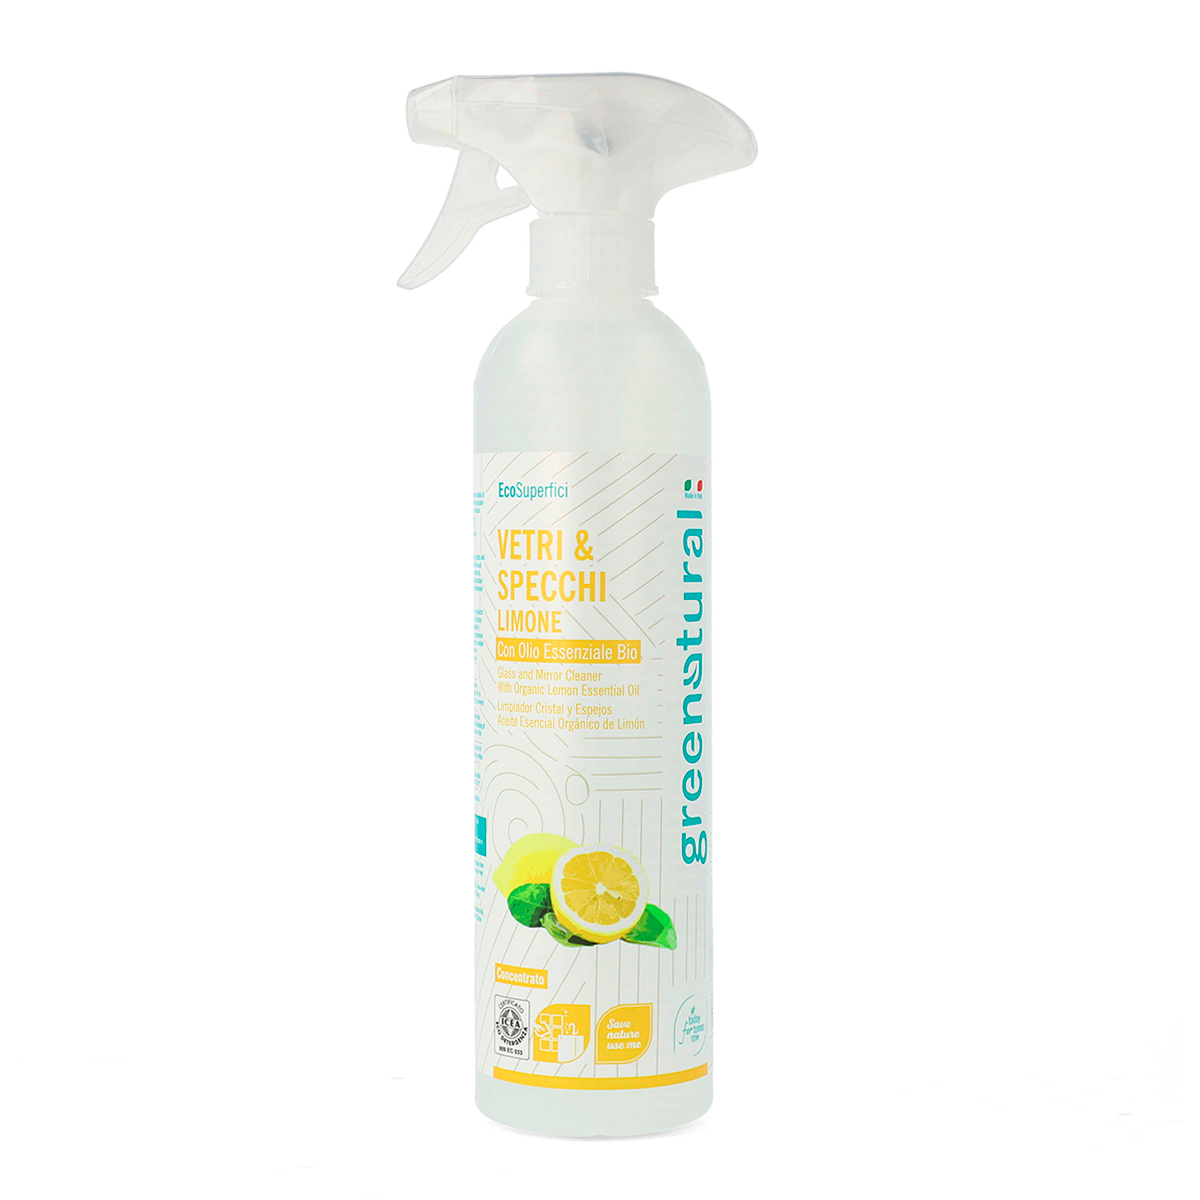 Greenatural Detergente Vetri & Specchi Limone